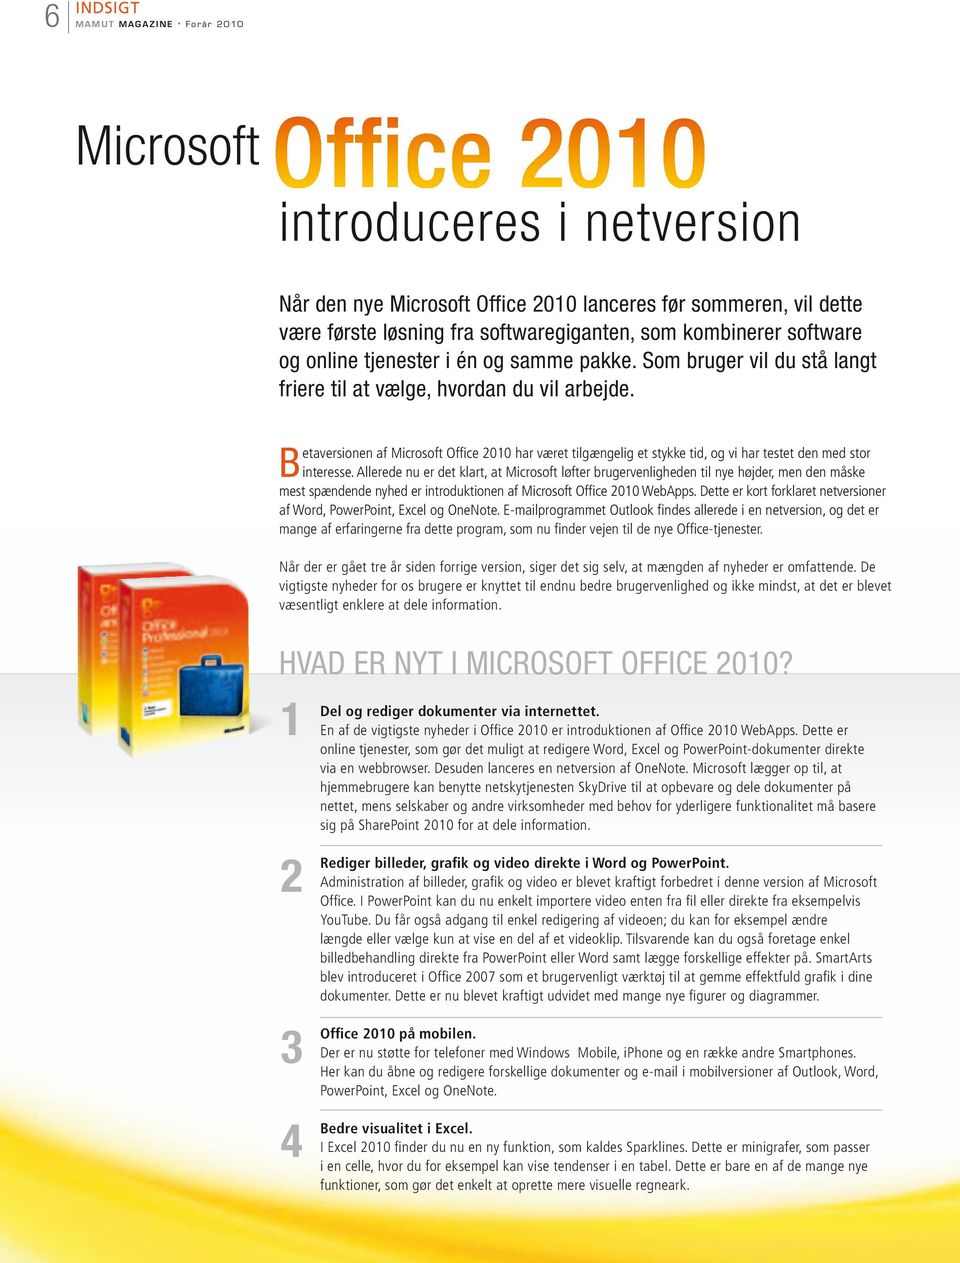 Betaversionen af Microsoft Office 2010 har været tilgængelig et stykke tid, og vi har testet den med stor interesse.